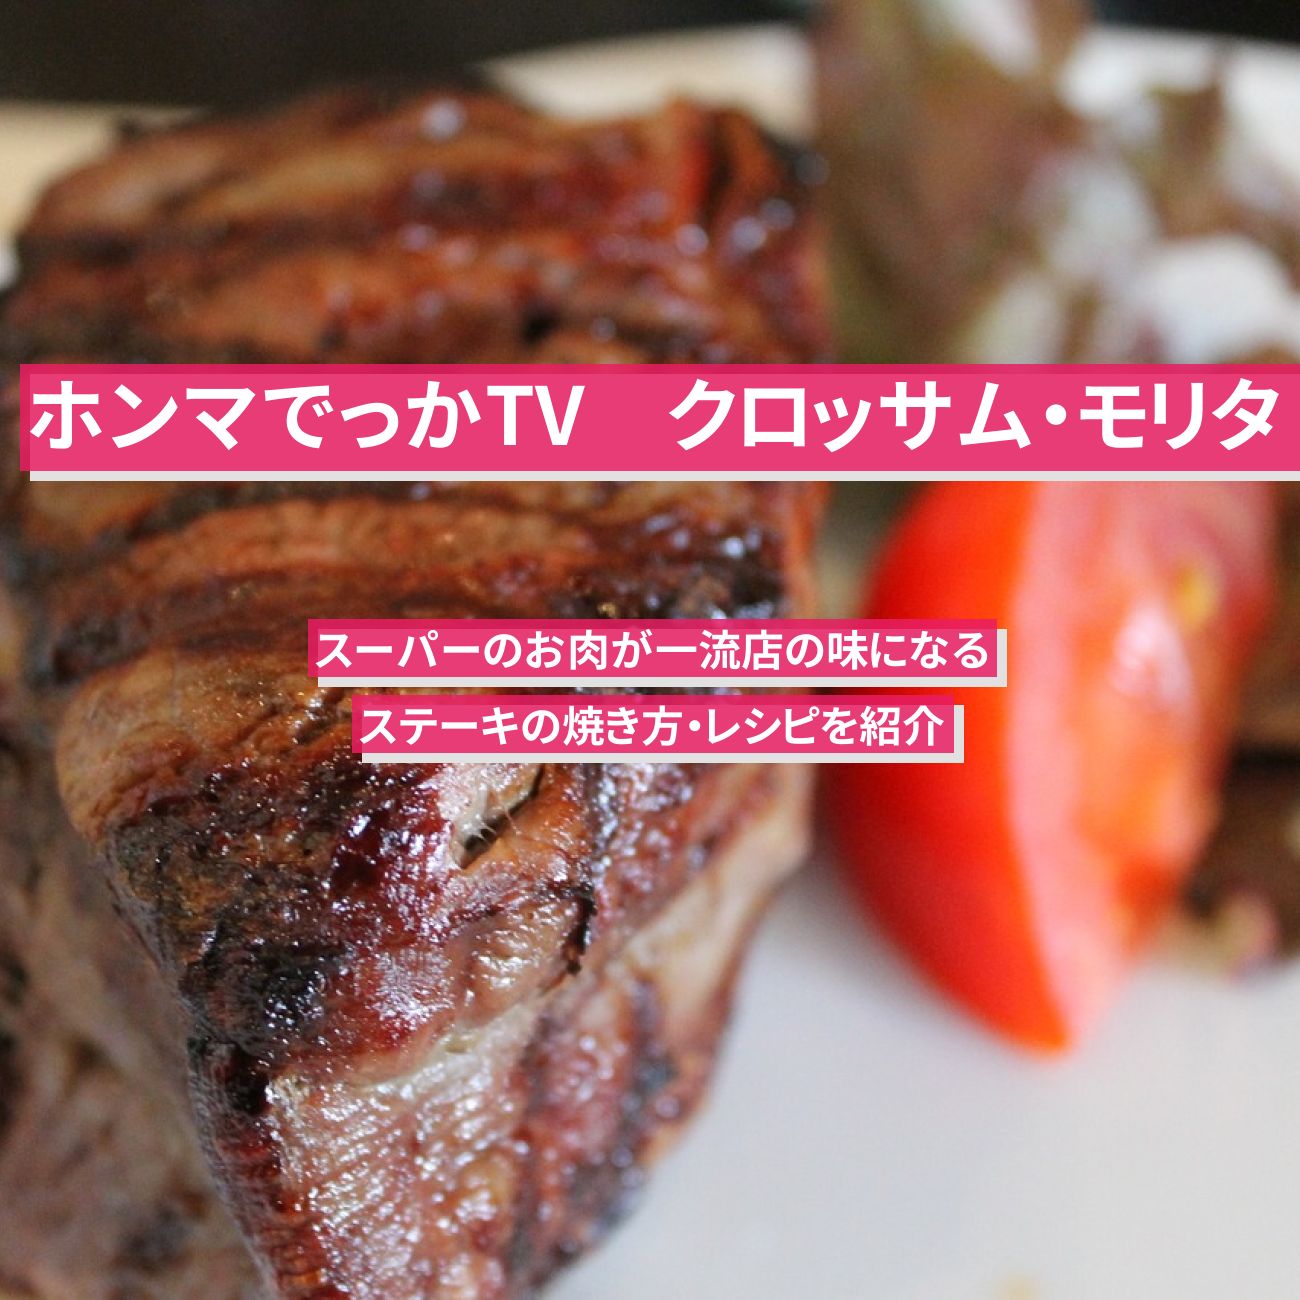 【ホンマでっかTV】『ステーキの焼き方』クロッサム・モリタのスーパーのお肉が一流店の味になる作り方・レシピ